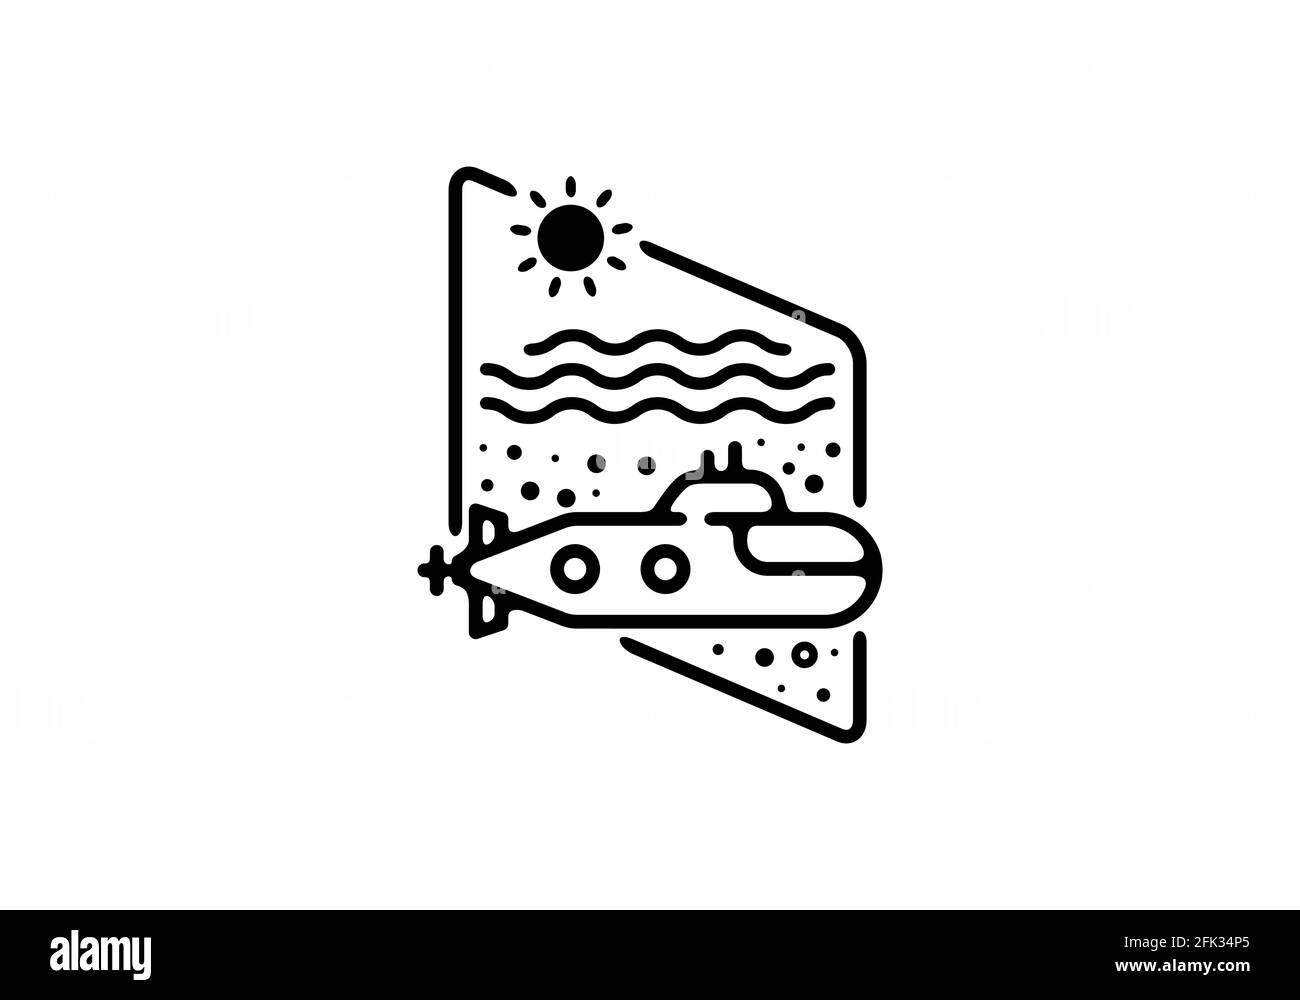 Ilustración de línea negra del submarino en forma de rombo Ilustración del Vector